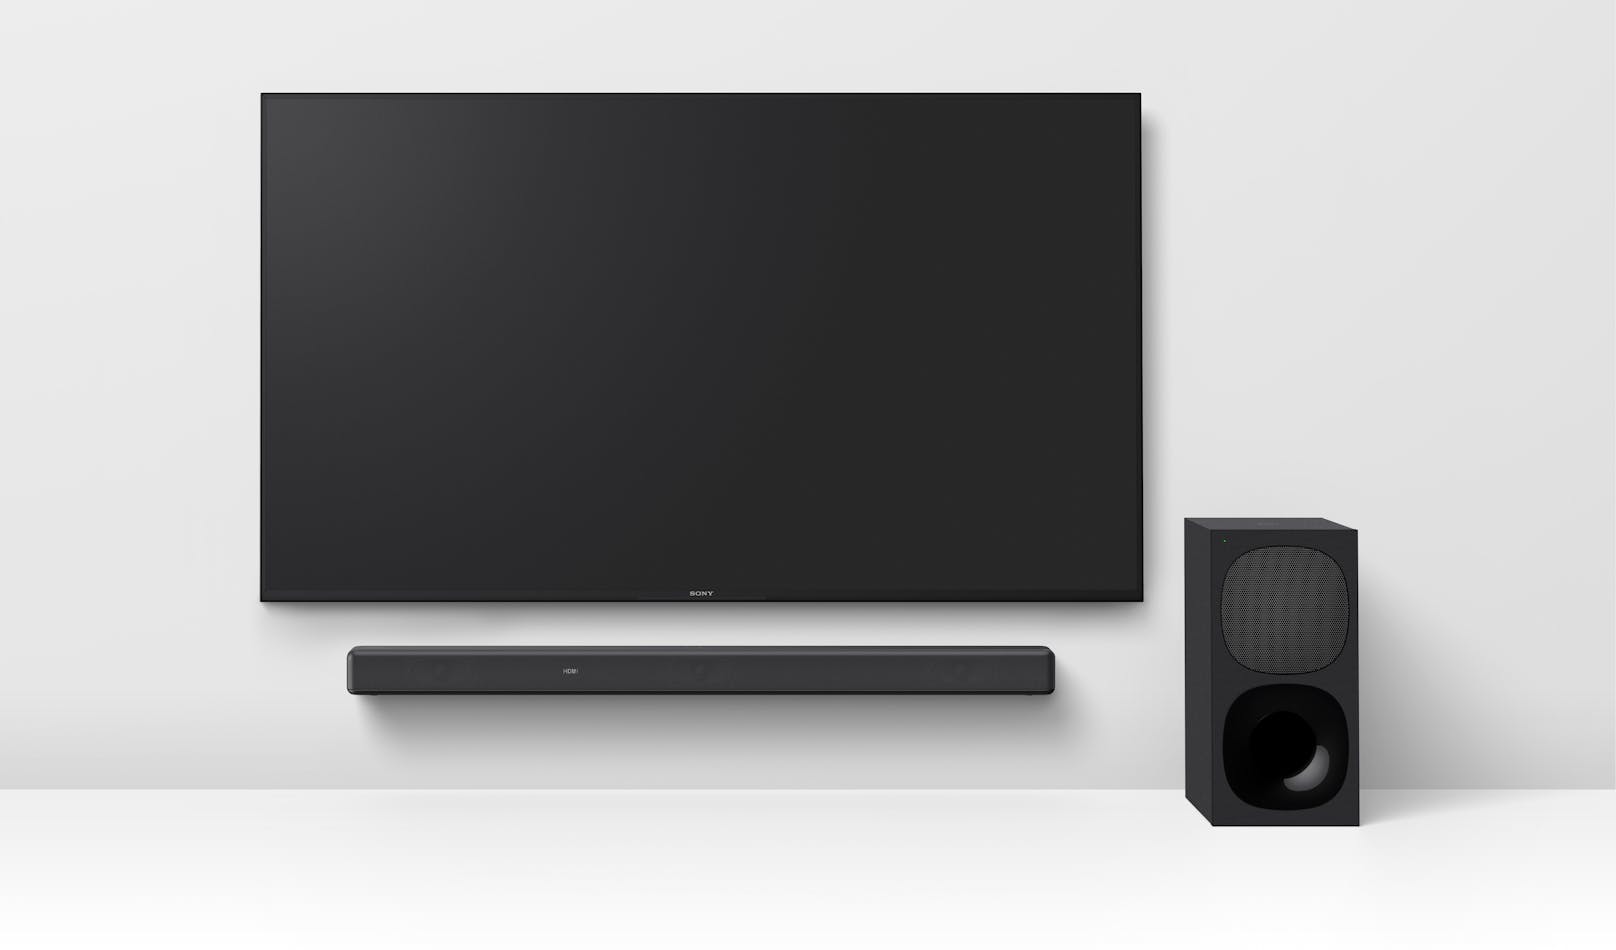 Die 3.1-Kanal-Soundbar HT-G700 mit Dolby Atmos und DTS:X bietet kraftvollen Surround Sound und sorgt für klar verständliche Dialoge - für unvergessliche Filmmomente.&nbsp;Die neue Soundbar macht den Ton mit bis zu 7.1.2-Kanal-Surround-Sound aus allen Richtungen erlebbar.